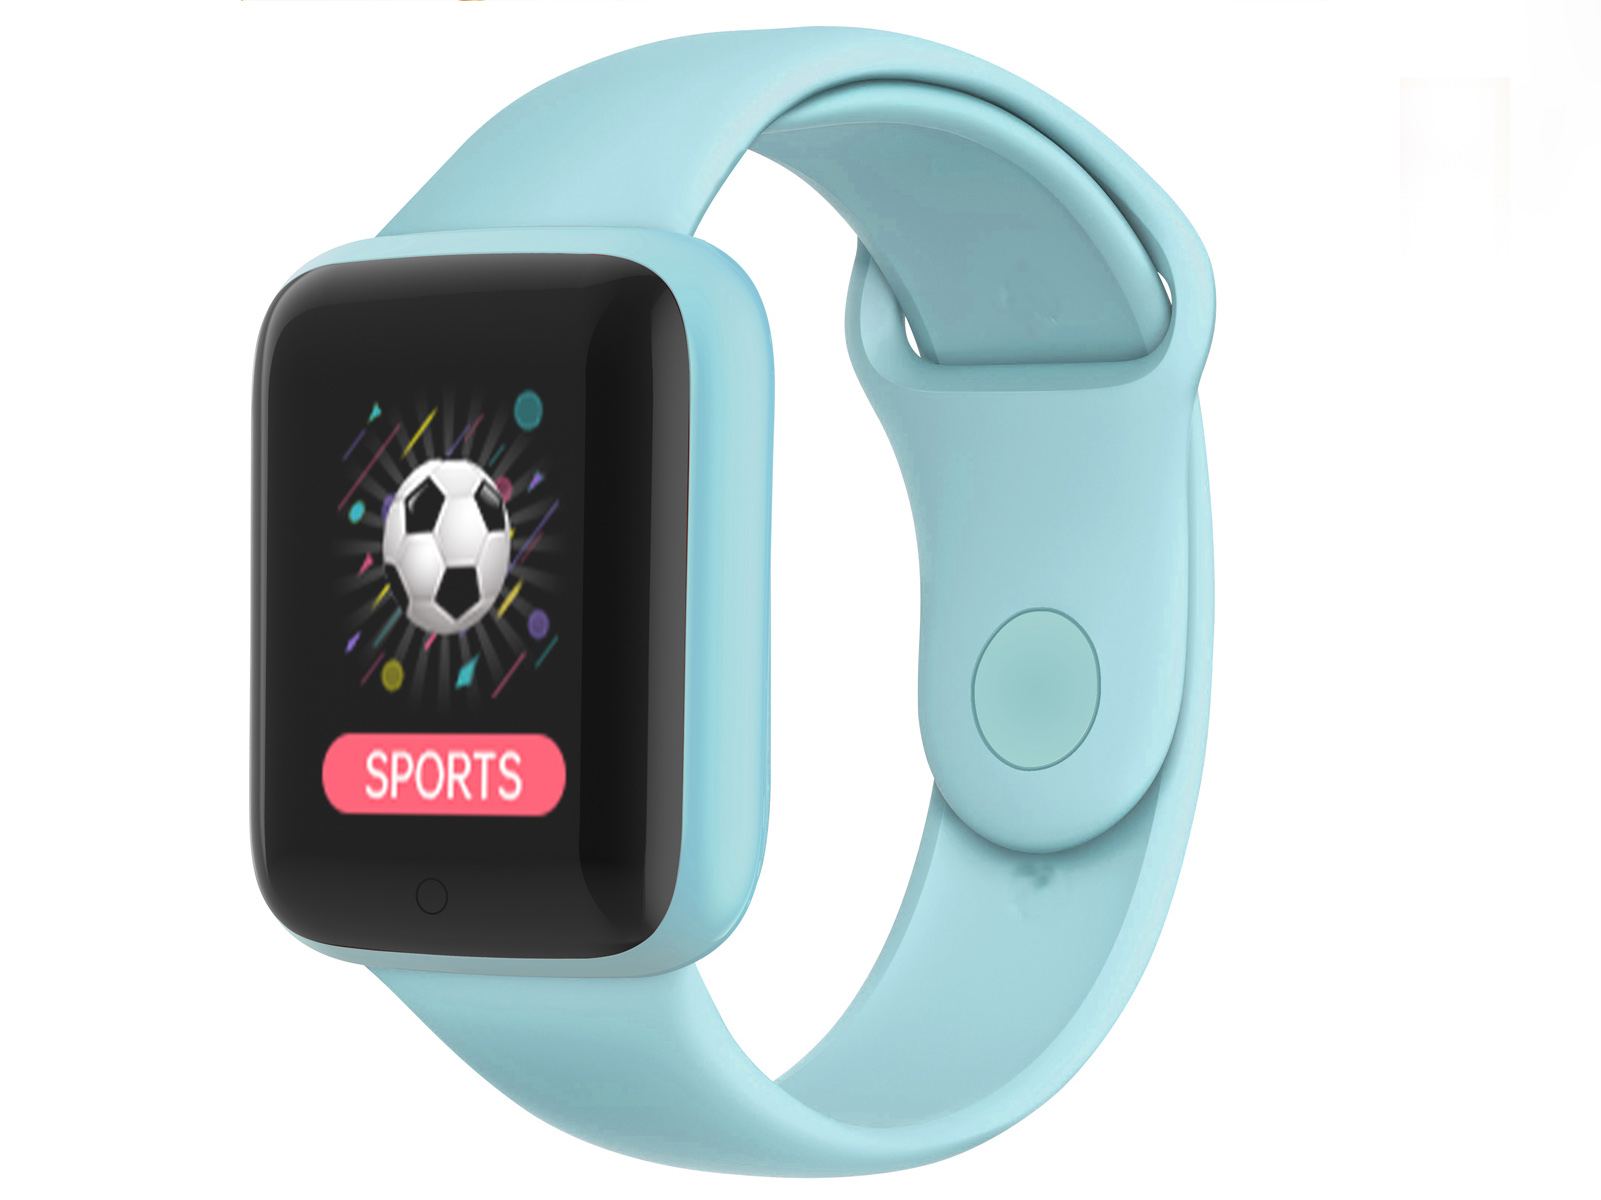 Xiaomi Mi Watch - Reloj Inteligente, Smartwatch Mujeres Hombres con  Pantalla 1.39 AMOLED, Monitor de Frecuencia Cardiaca